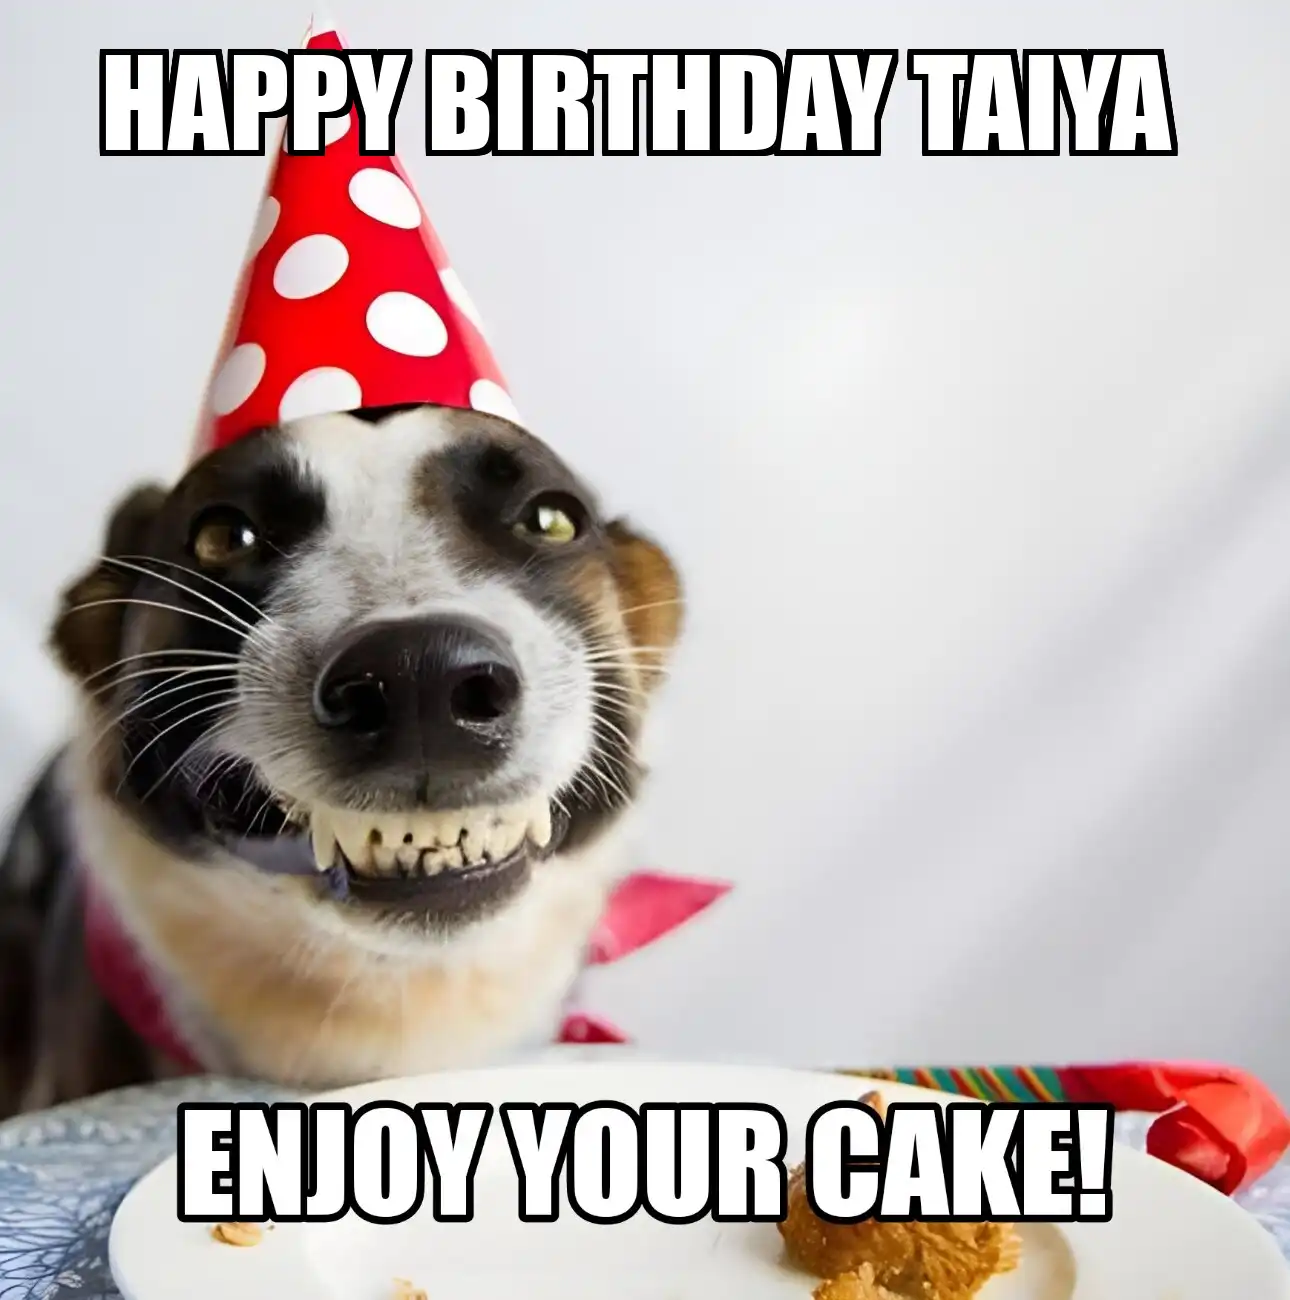 Happy Birthday Taiya Enjoy Your Cake Dog Meme